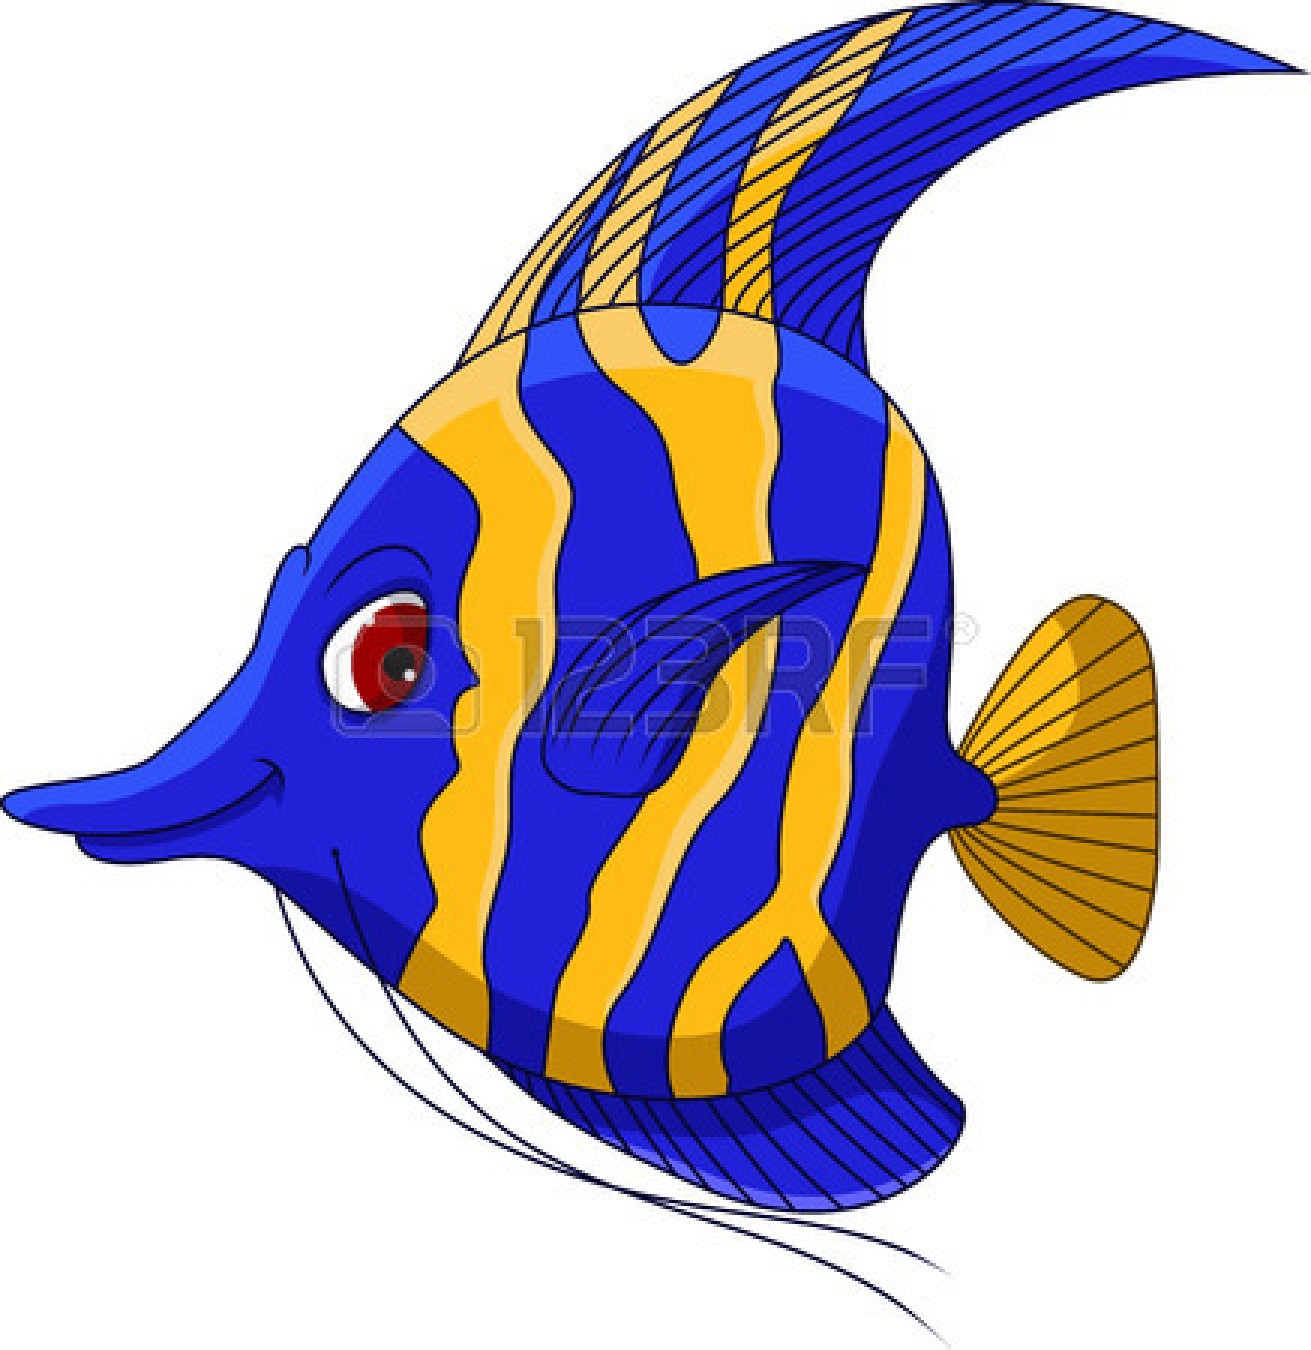 angelfish: moorish idol Illus